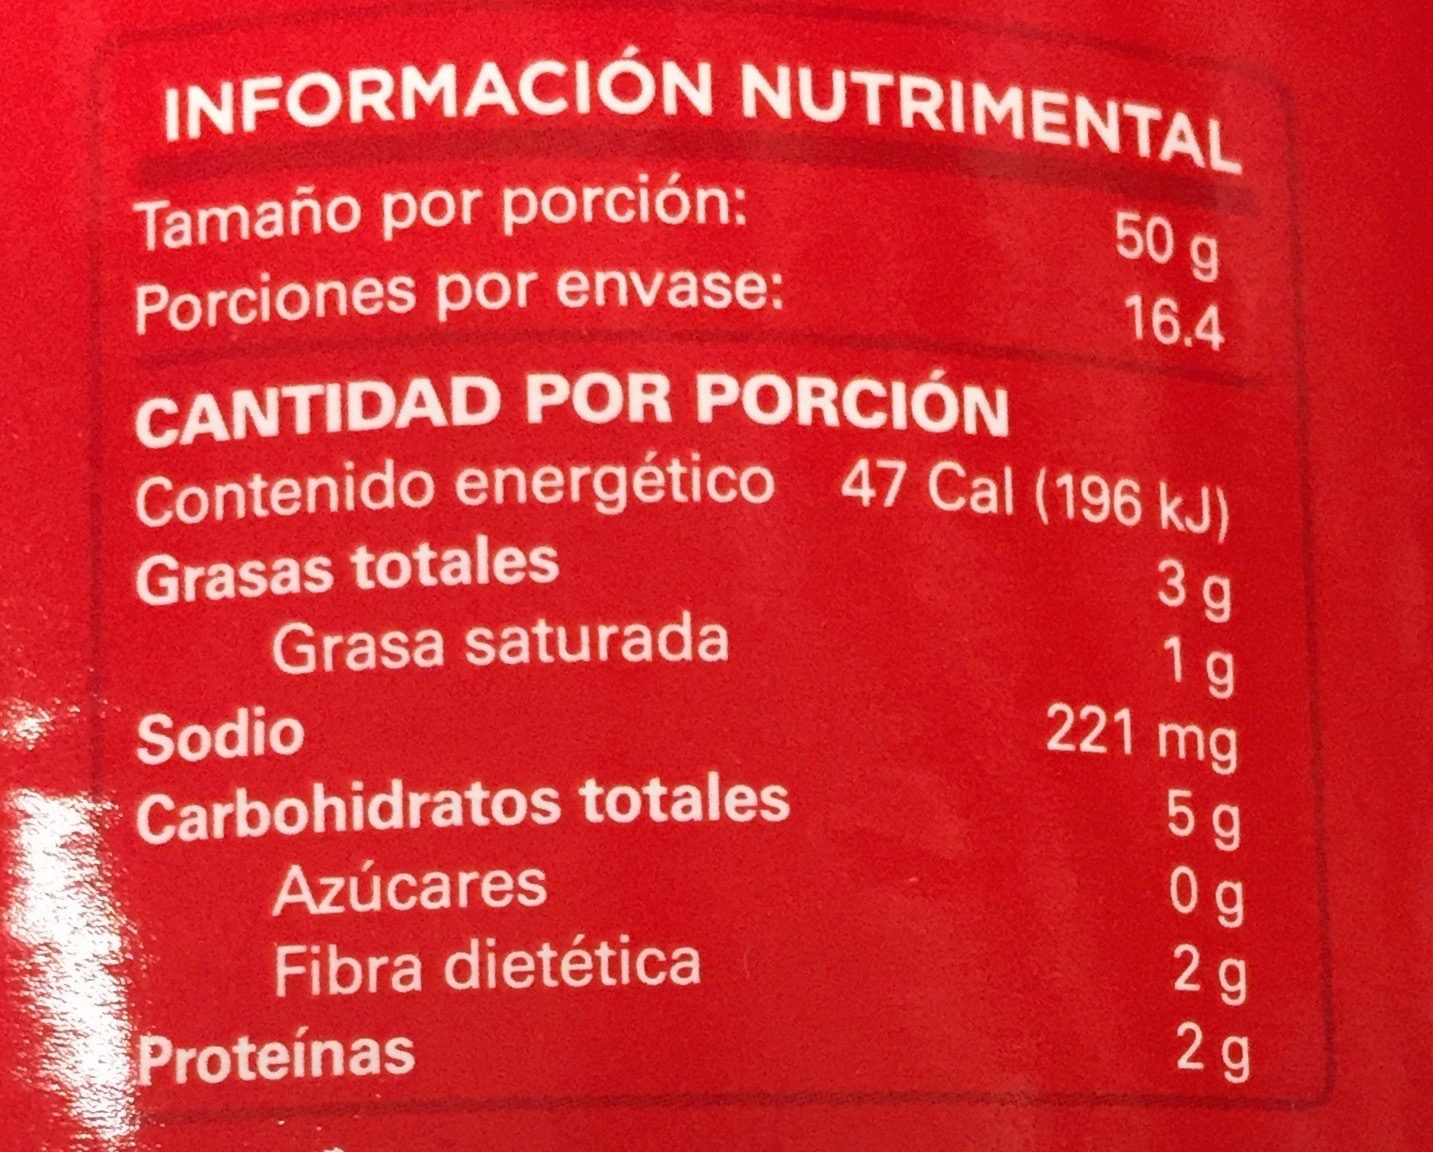 FRIJOLES BAYOS REFRITOS - Información nutricional